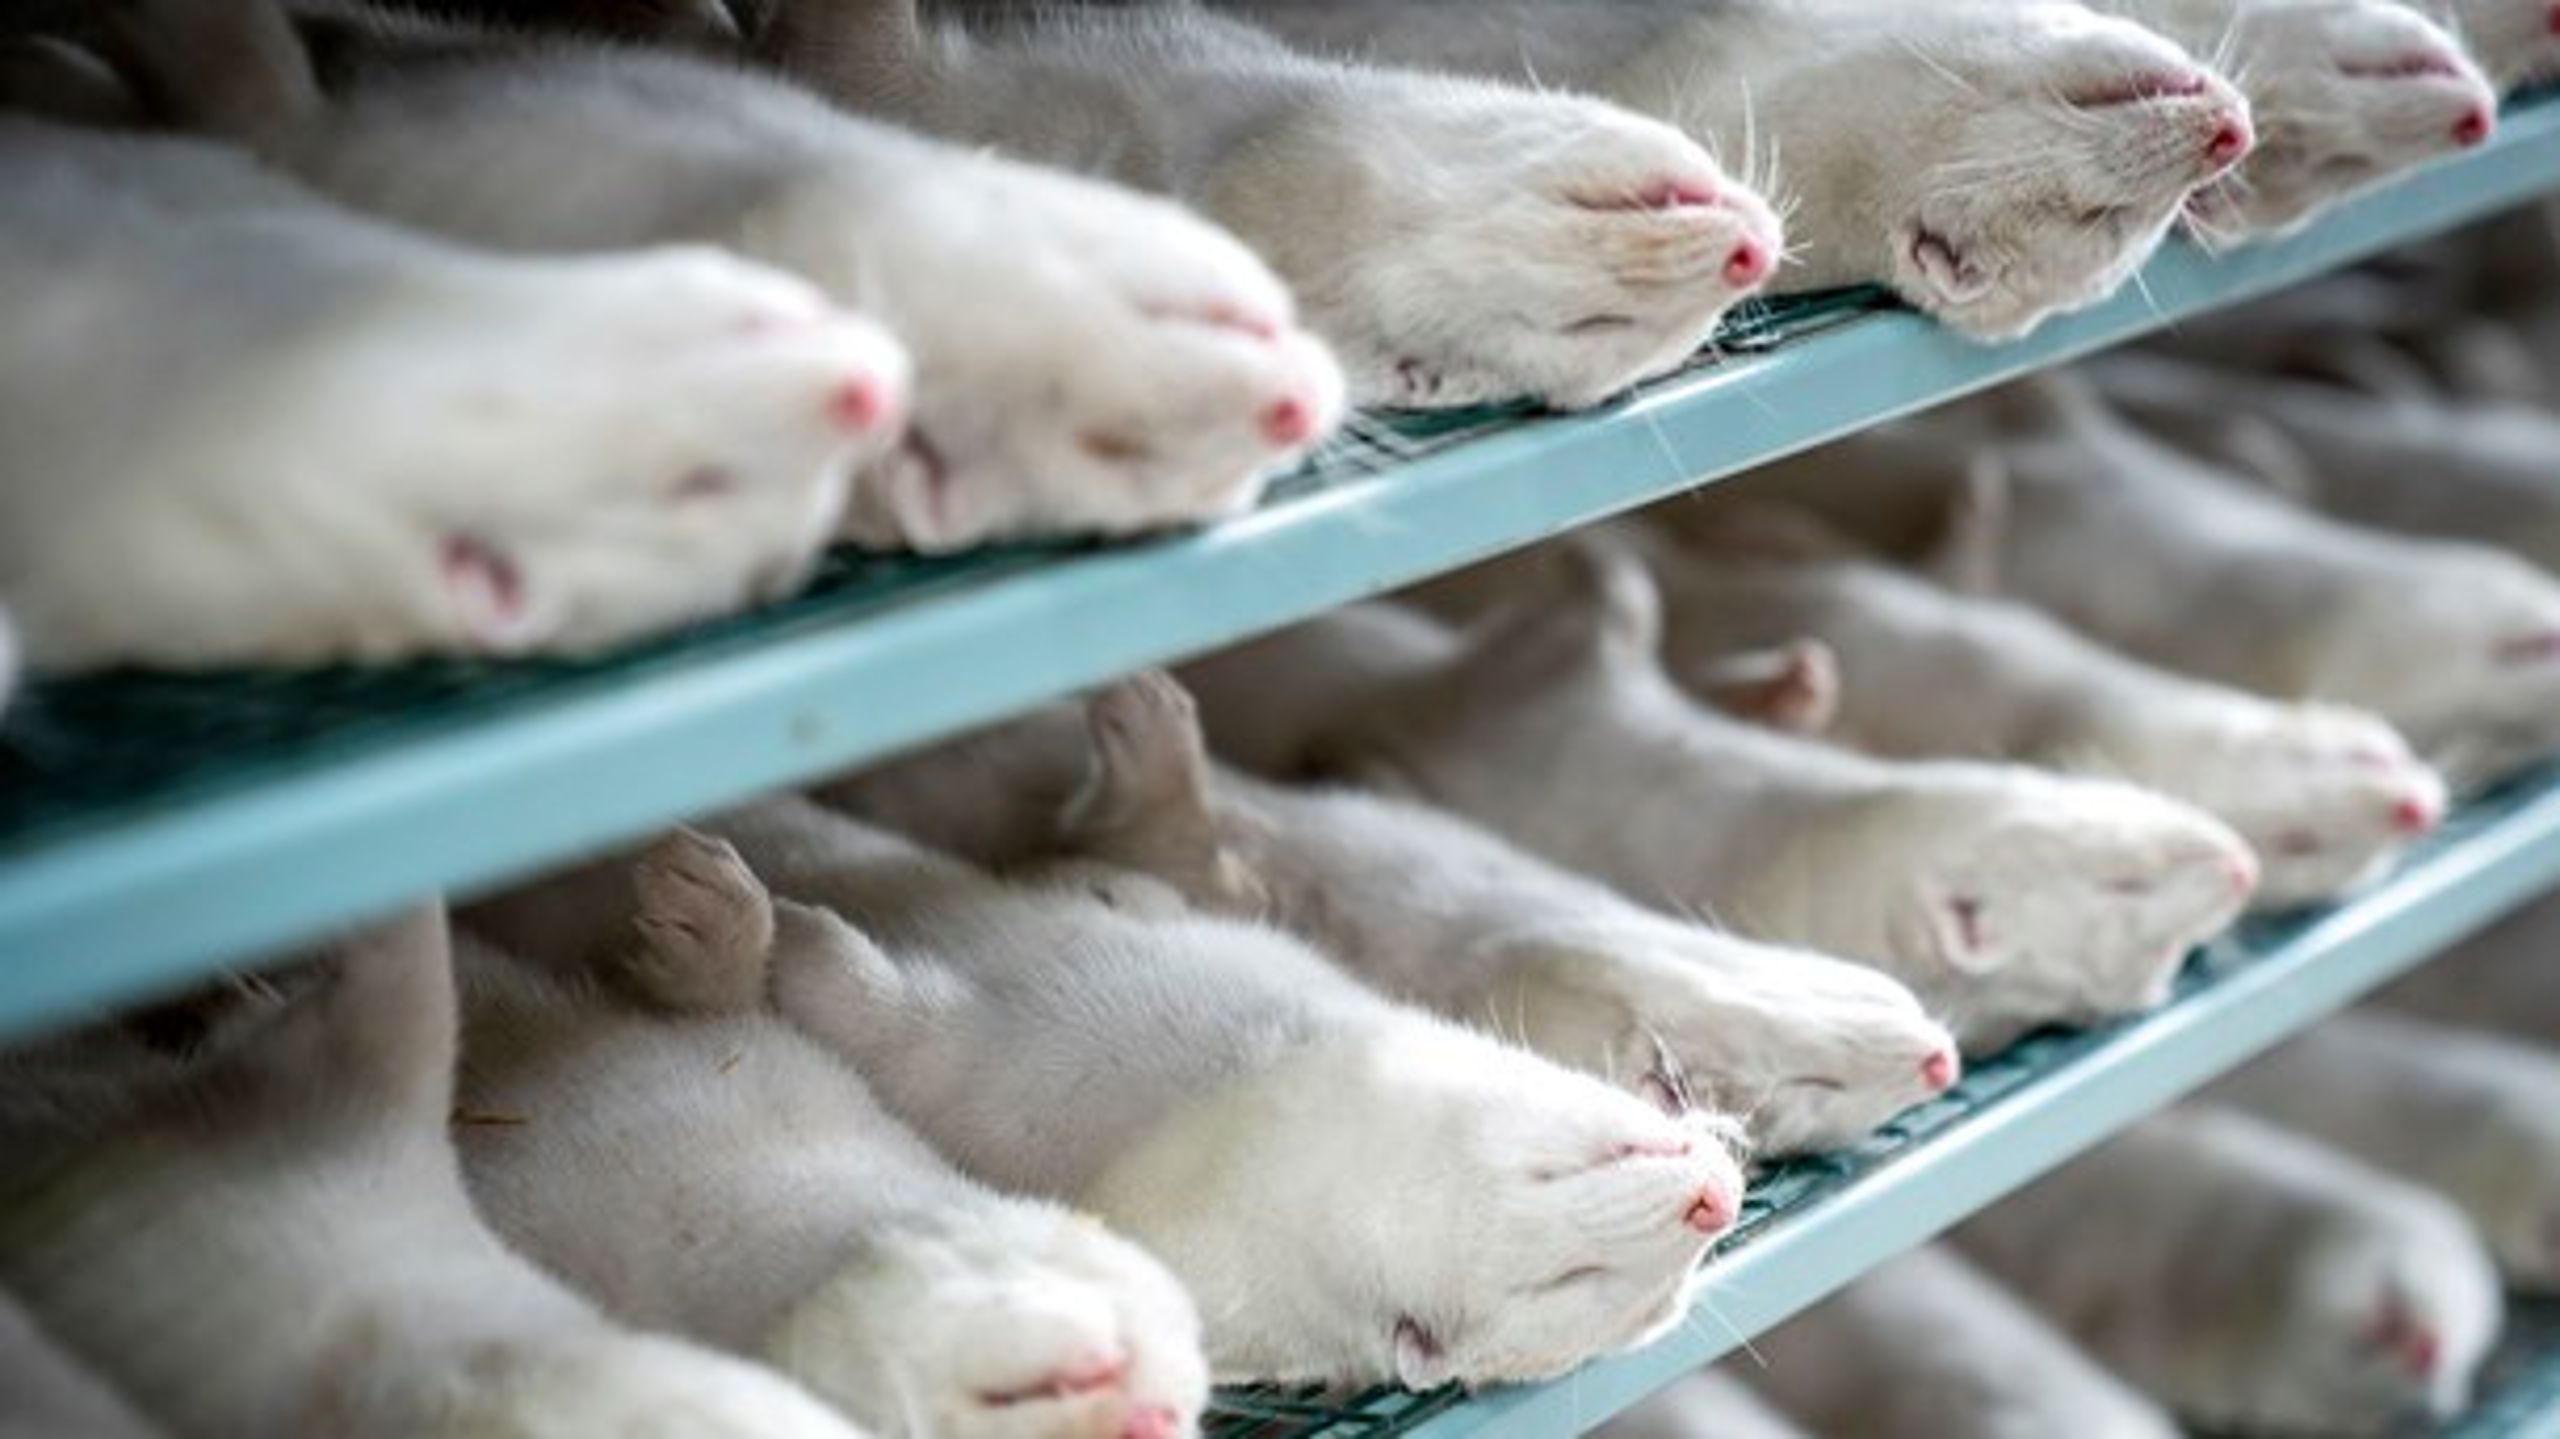 EU's sundhedsagentur udkommer torsdag med en sundhedsrapport om mutationer i danske mink.